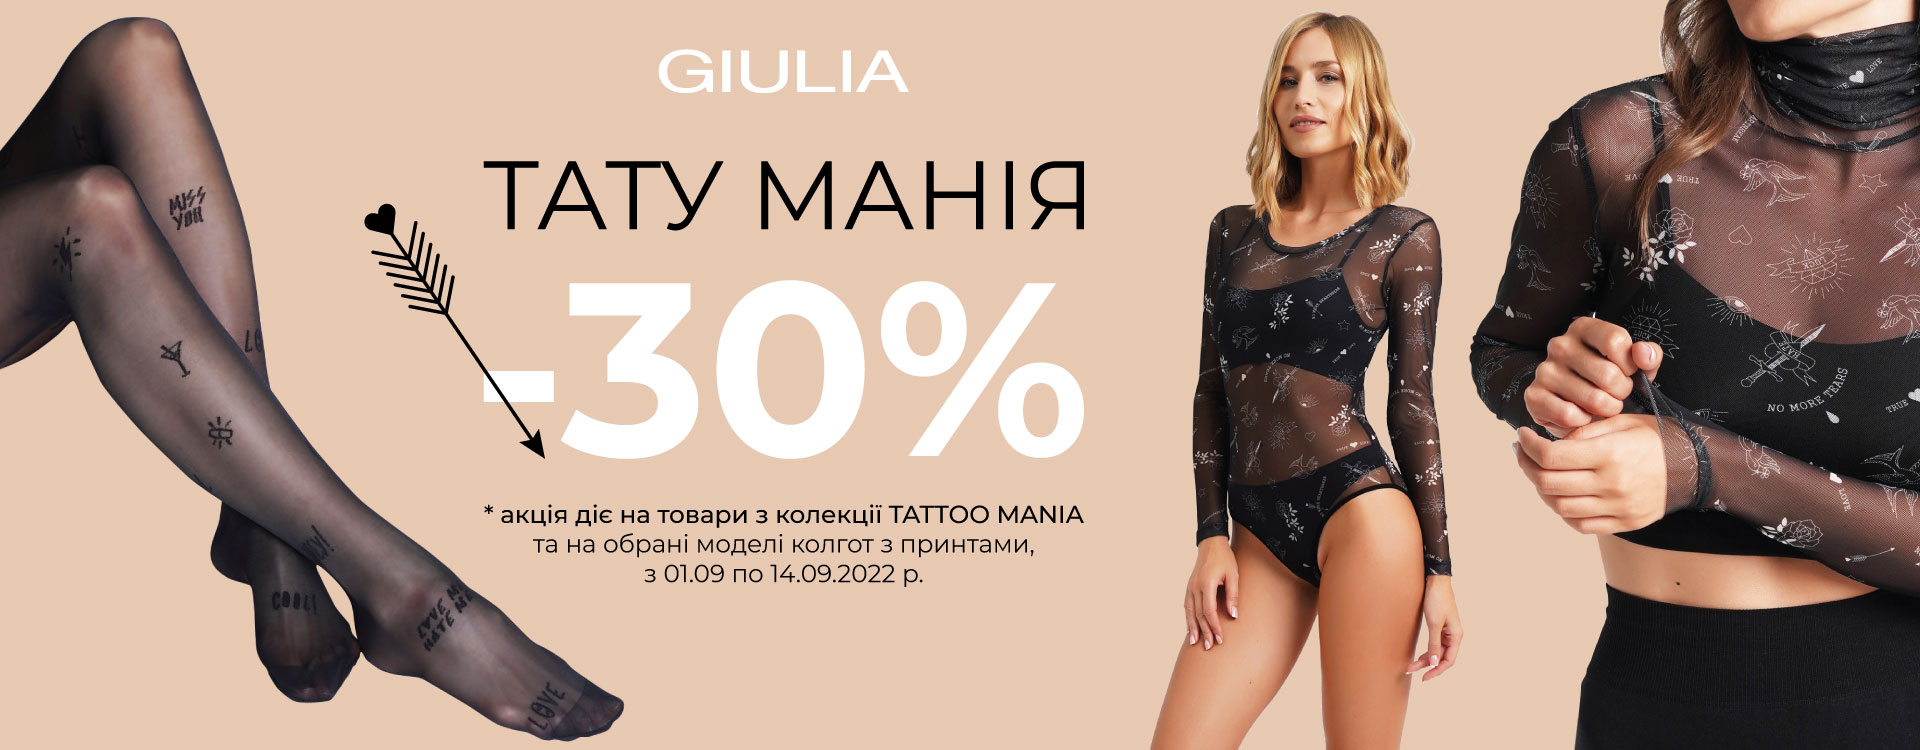 GIULIA has a 30% DISCOUNT on TATTOO MANIA